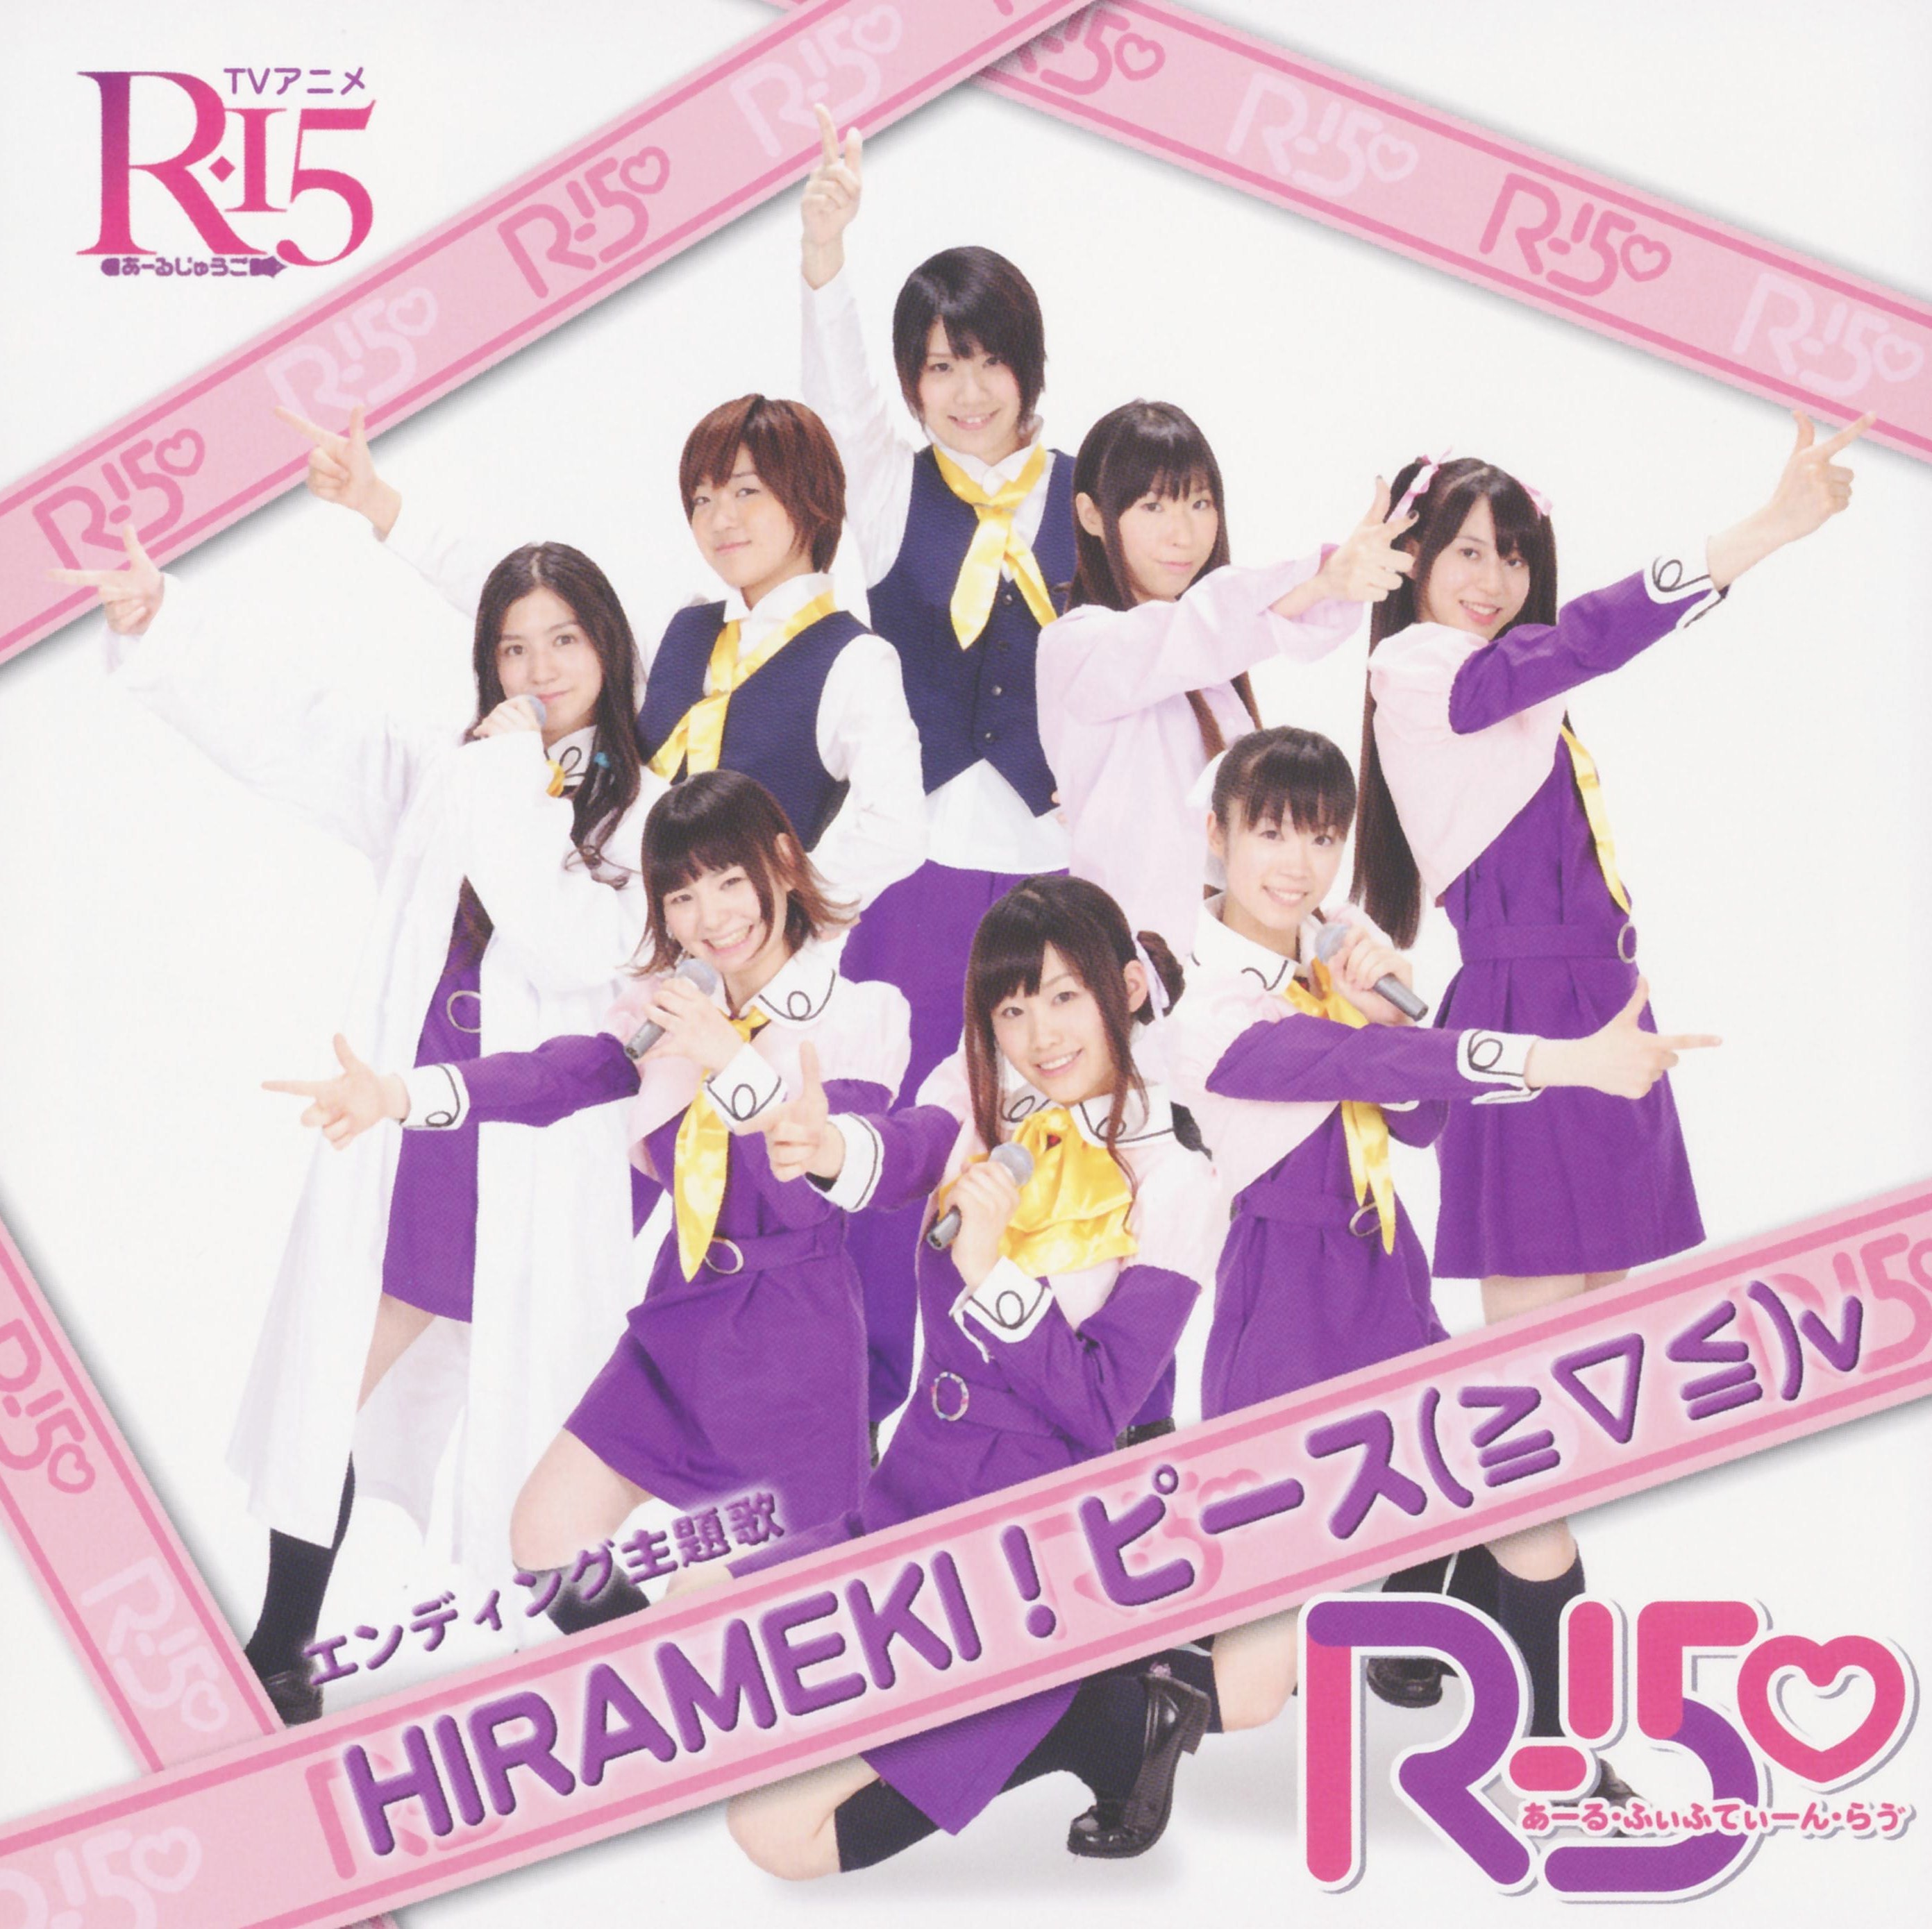  - r-15-ed-hirameki-peace